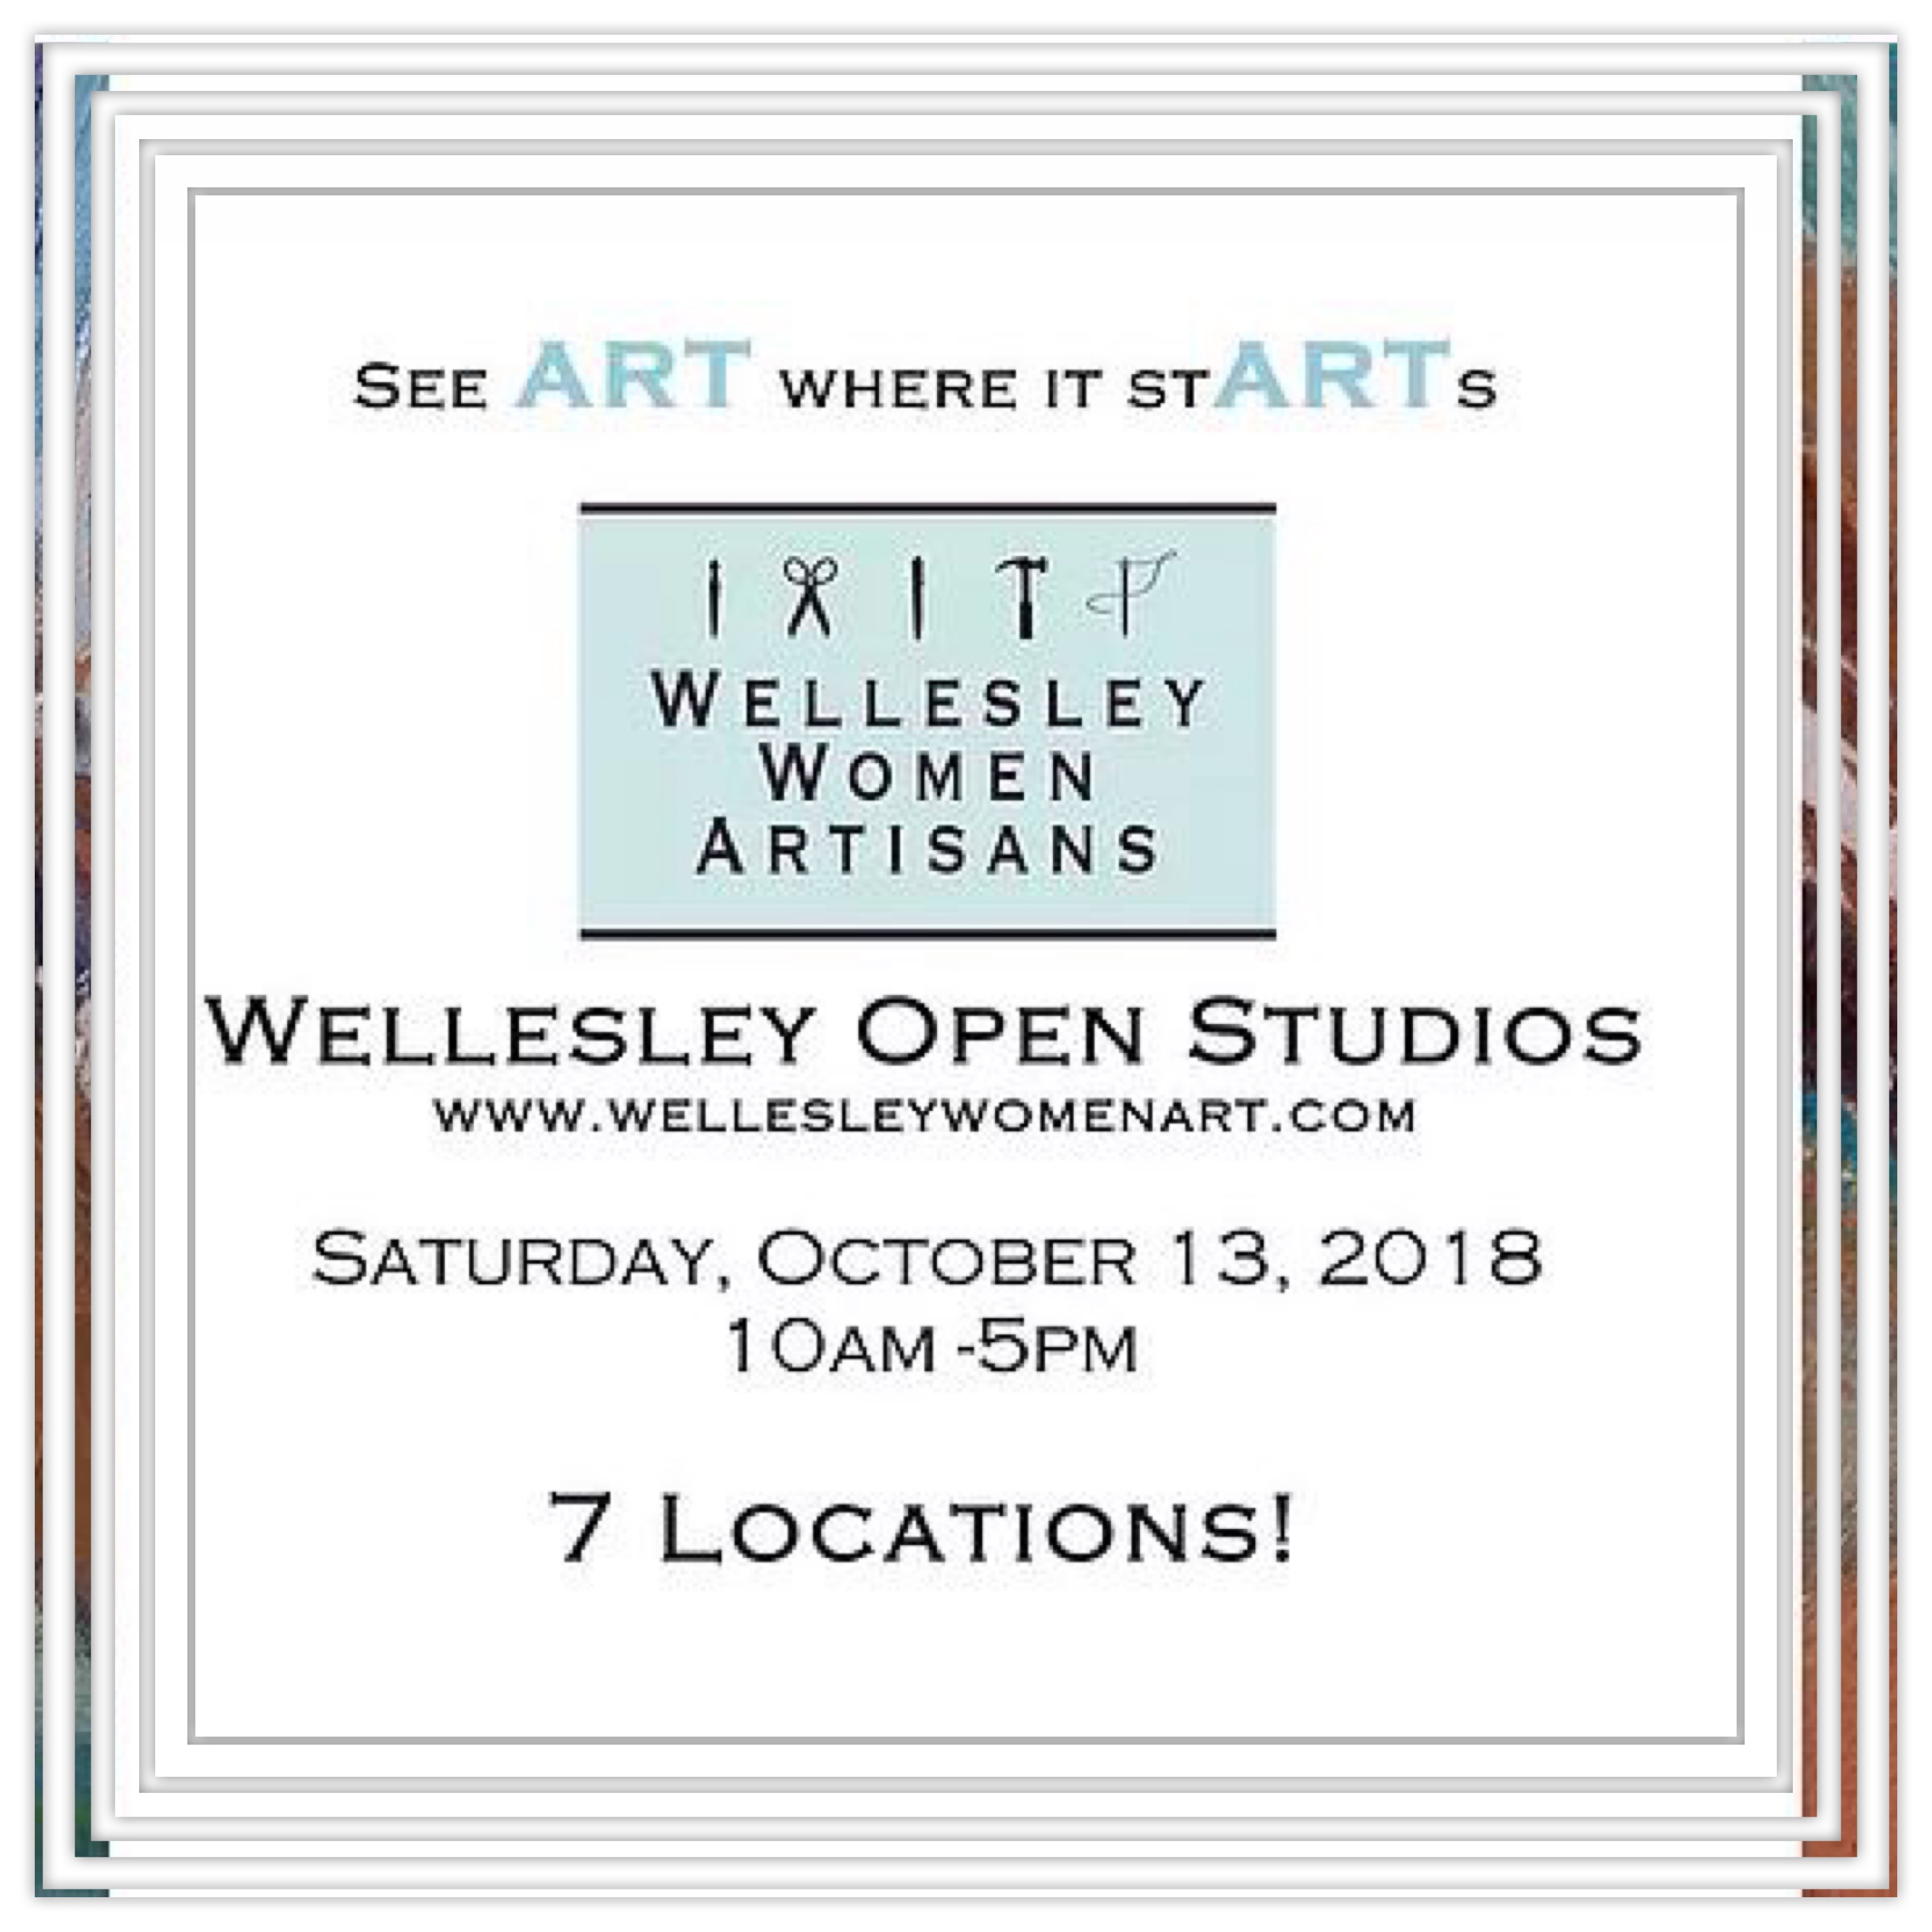 Wellesley open studios